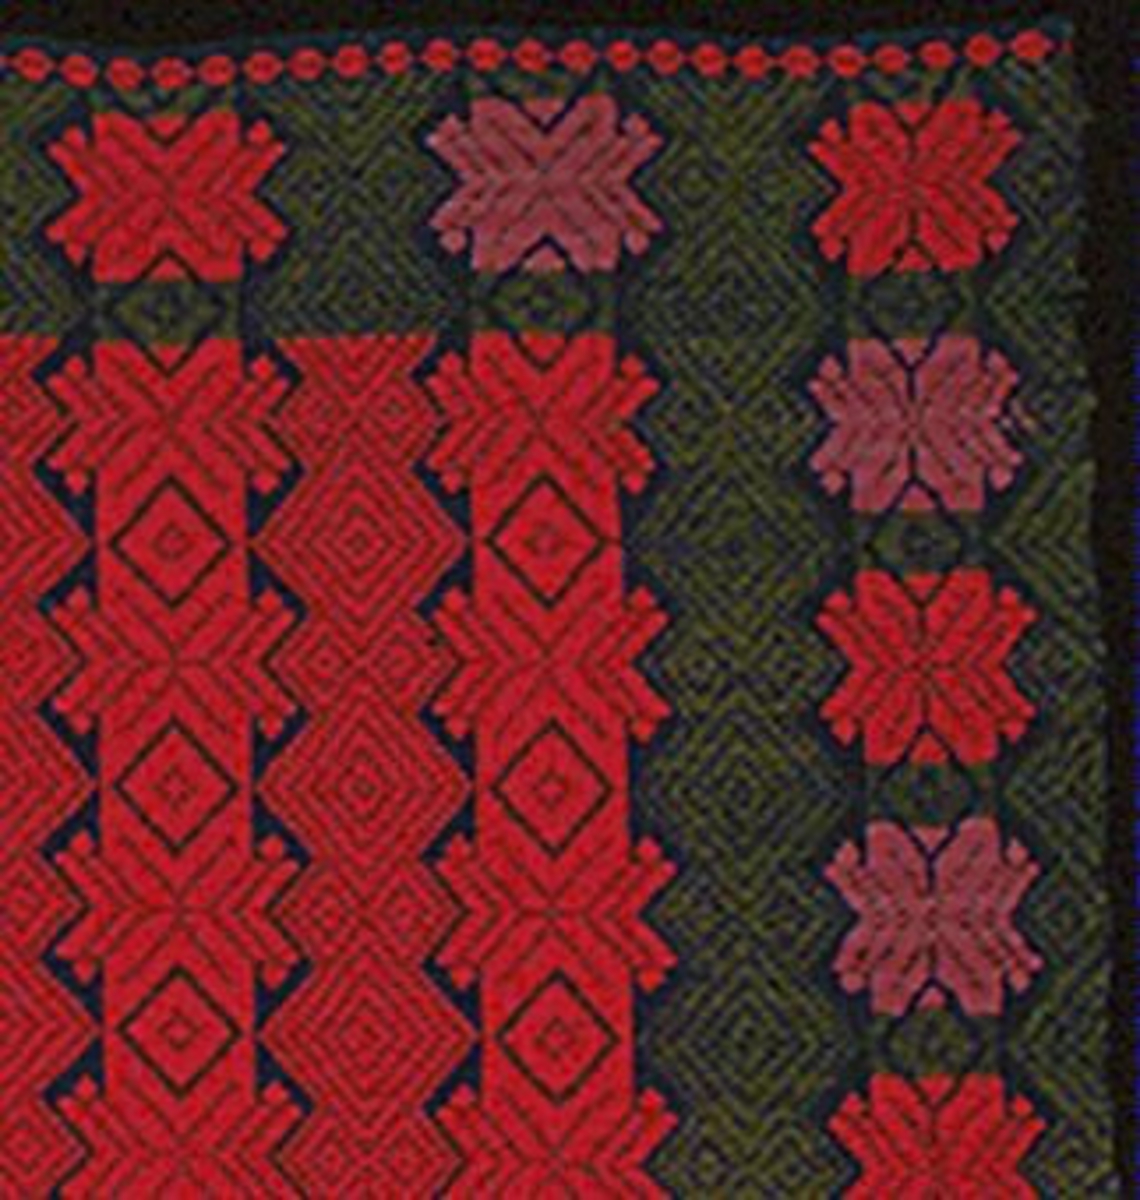 Täcke vävt i opphämta. Täcket kan också använts som bordtäcke. Yttäckande inplockat mönster av stjärnor och snedrutor i lodräta rader. Blå linnebotten i tuskaftsbindning. Rödmönstrad mittspegel, grön bård runt om med växelvis lila och röda stjärnor. Täcket är ihopsytt av två delar, söm mitt på i svart lingarn. Täcket är avslutat med en smal rödmönstrad bård i kortsidorna intill den smala fållen. Stadkanter i långsidorna.Varp i indigoblått 1-trådigt z-spunnet lingarn, 18 trådar/cm.Botteninslag samma som varpgarnet, 12 inslag/cm.Mönsterinslag i 2-trådigt s-tvinnat ullgarn, 10 inslag/cm.Lappat på baksidan med blå bomullslappar.Märkt på baksidan med påsydd tyglapp med texten: "N° 174 a. Färs h-d.". Intill sitter ett fastnästat vitt bomullsband med texten: "8356 MALSÄKR. 6/10".